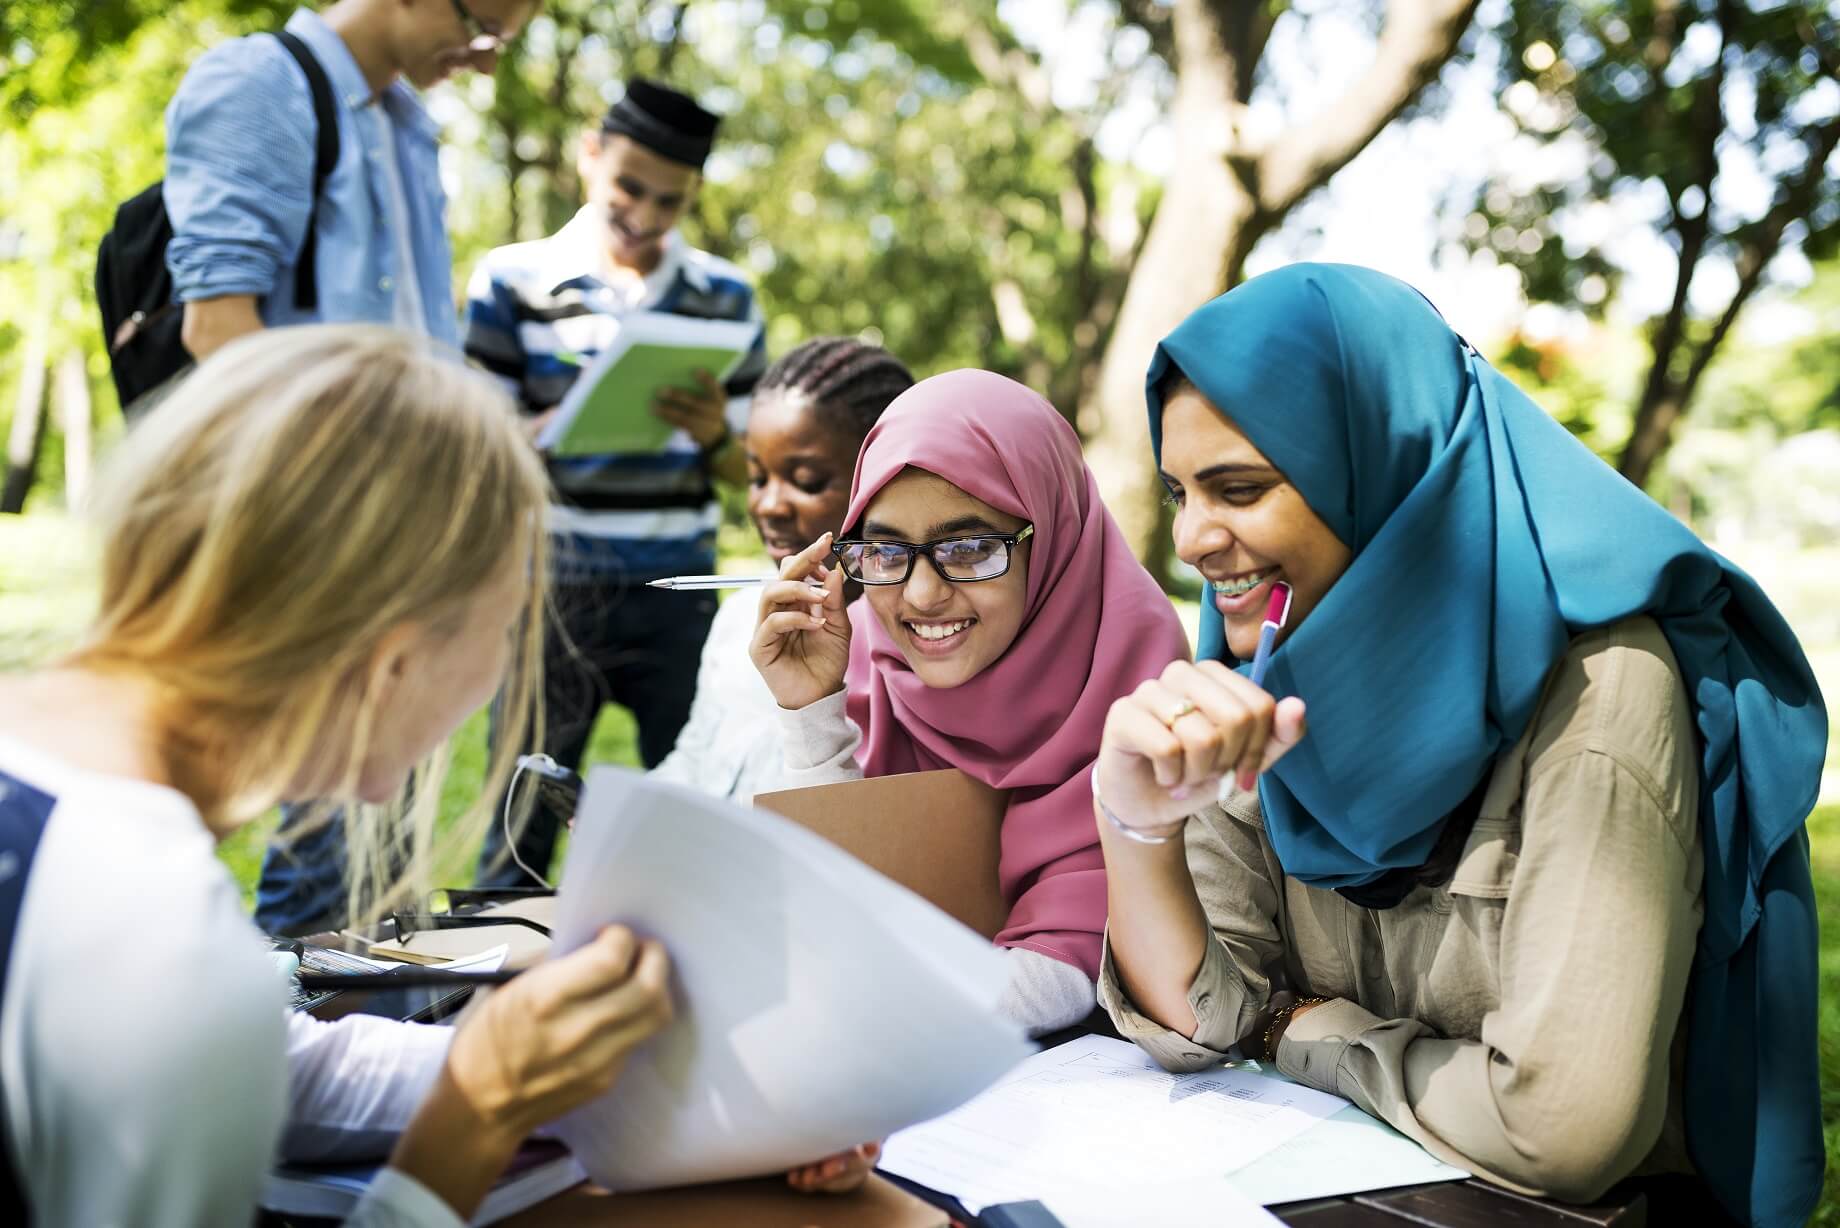 Fotografía de un grupo de jóvenes de la región de Oriente Medio sentados alrededor de una mesa en un parque, interactuando entre sí y mirando material impreso en papel.